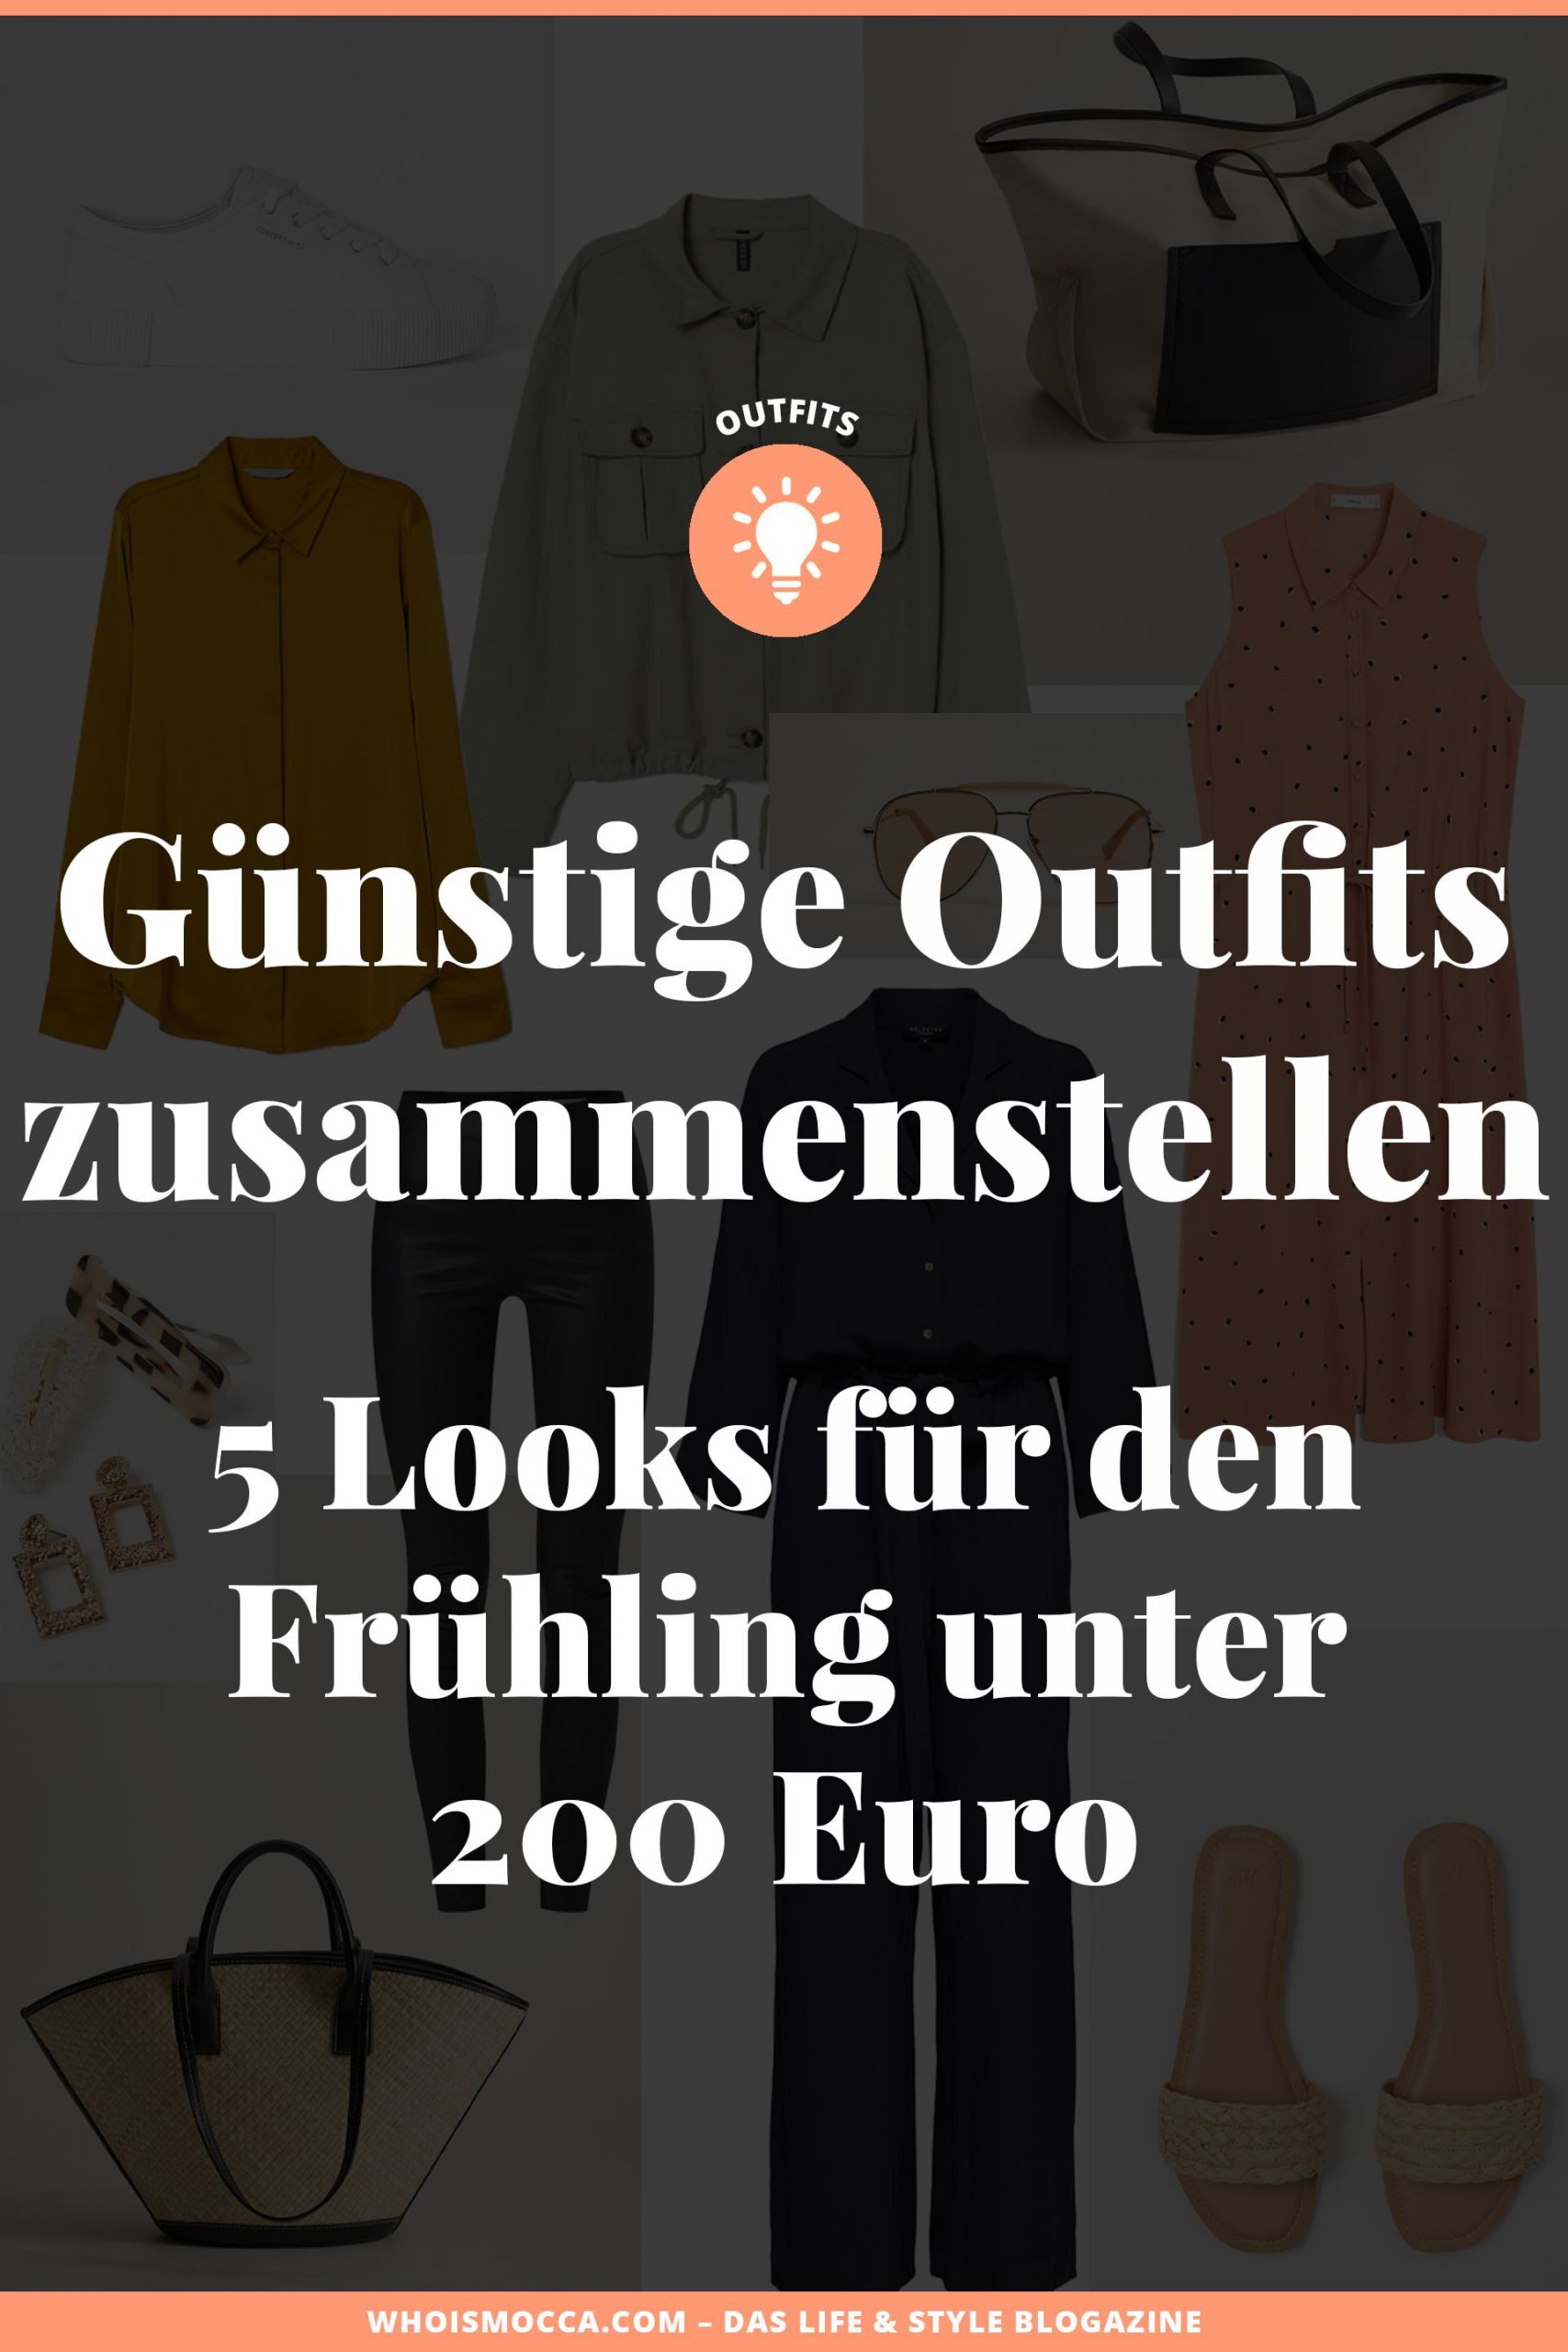 Du möchtest dir günstige Outfits zusammenstellen, die modern und stylisch sind? Am Modeblog habe ich 5 Looks unter 200 Euro für dich kreiert. Viel Spaß beim Stöbern! www.whoismocca.com #frühlingsoutfit #modetrends #frühlingstrends